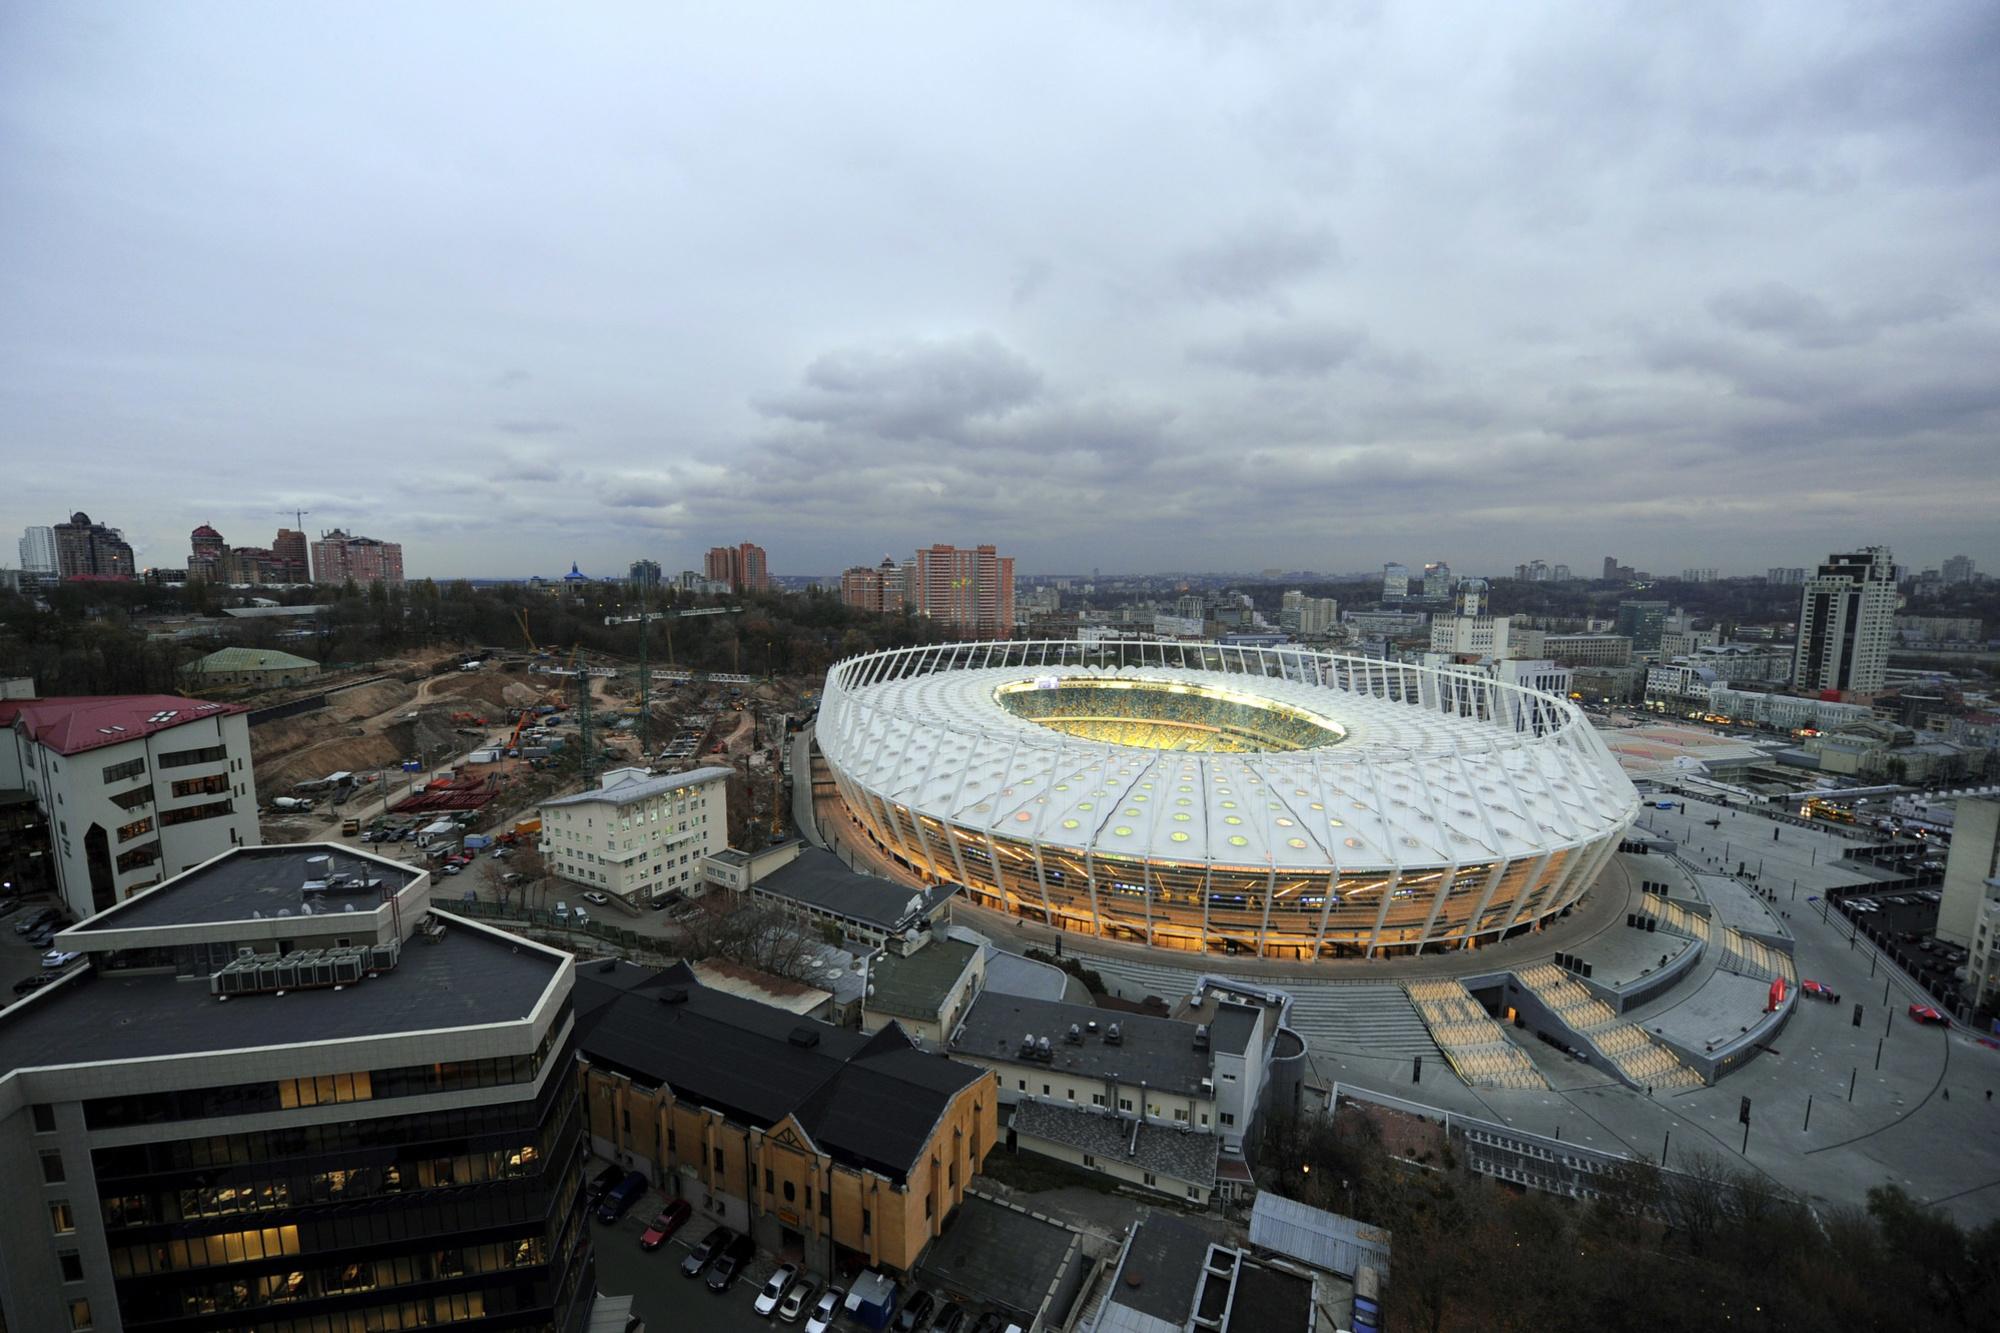 Le stade de Kiev où se disputait voici bientôt dix ans la finale de l'Euro 2012 organisé conjointement par la Pologne et l'Ukraine.